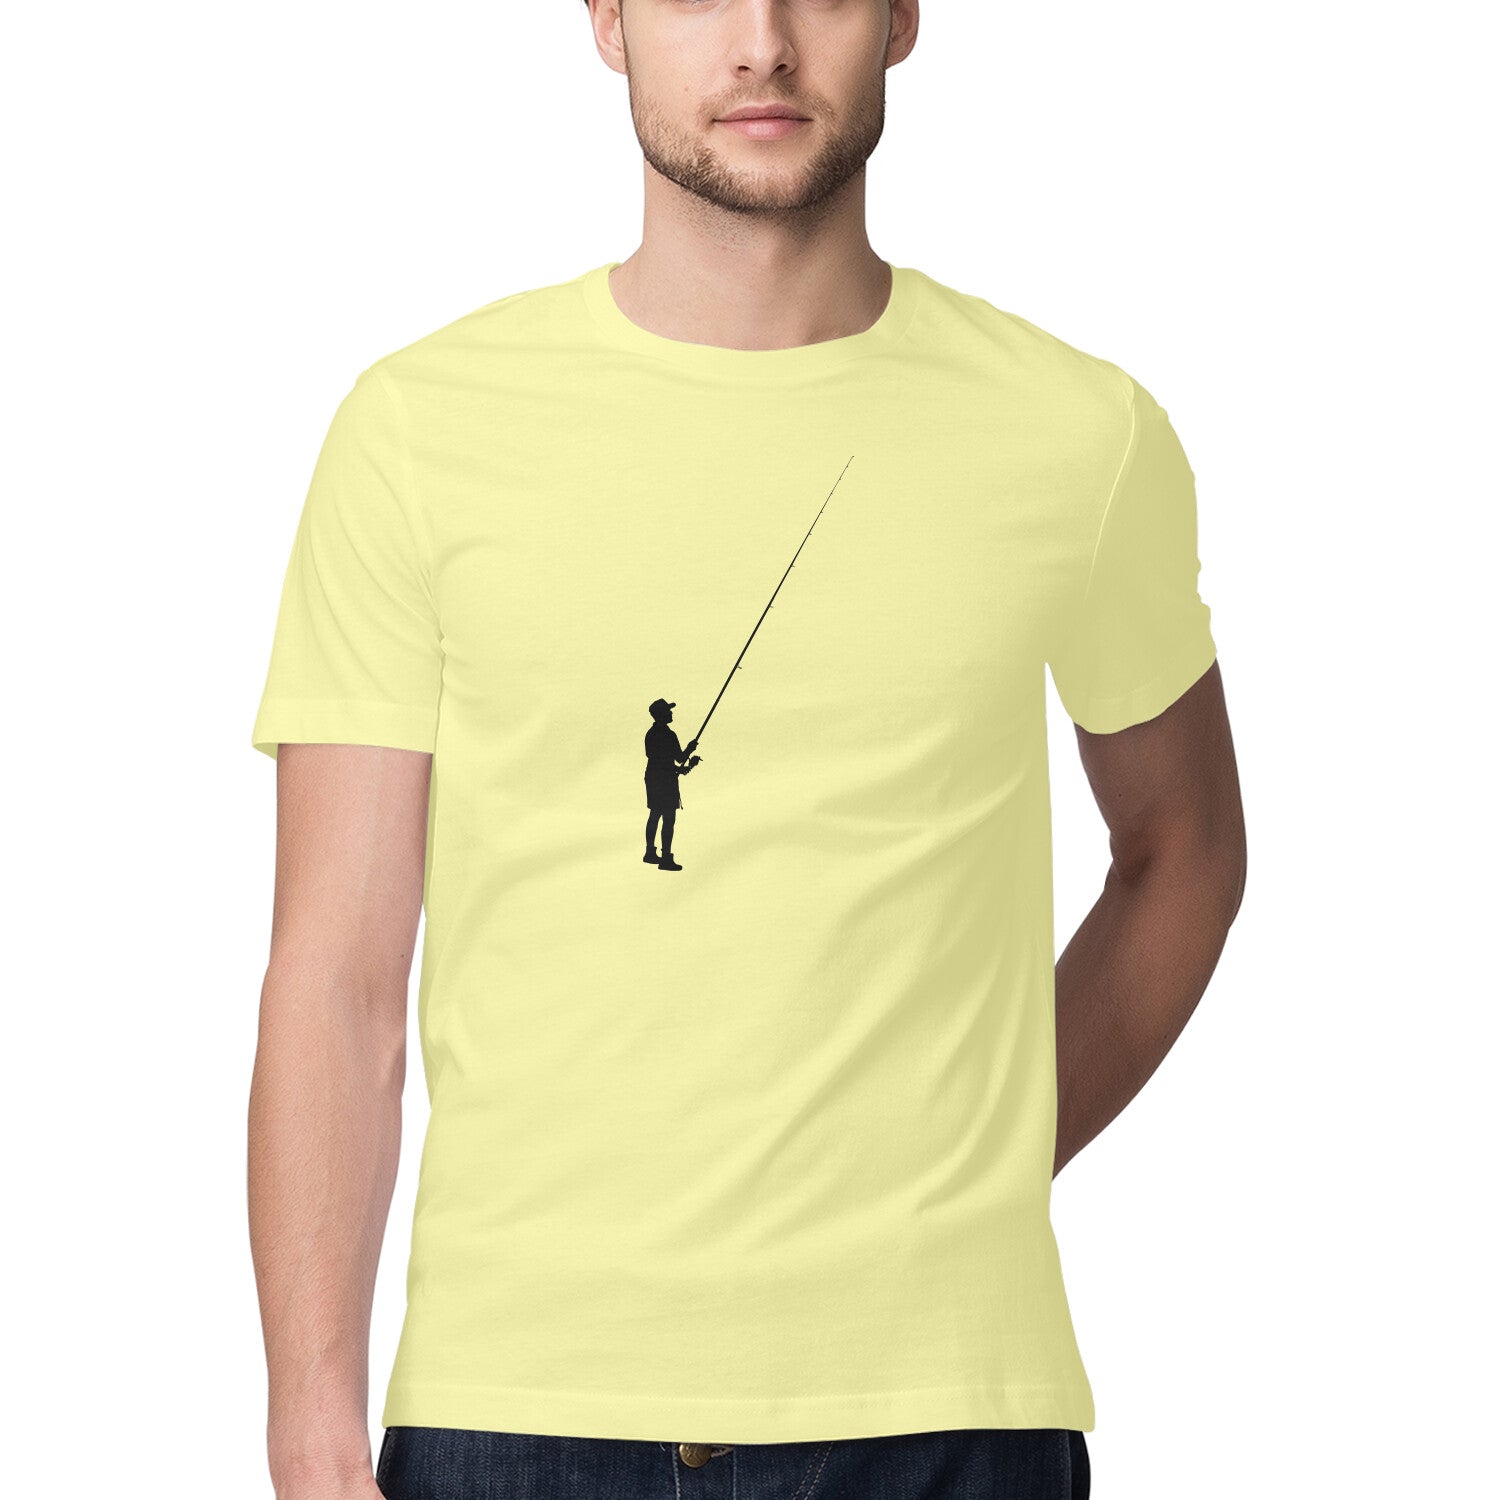 पुरुषों की एंग्लिंग टी-शर्ट्स | एकाकी मछली पकड़ने वाला| गोल गला | छोटी बाजू |